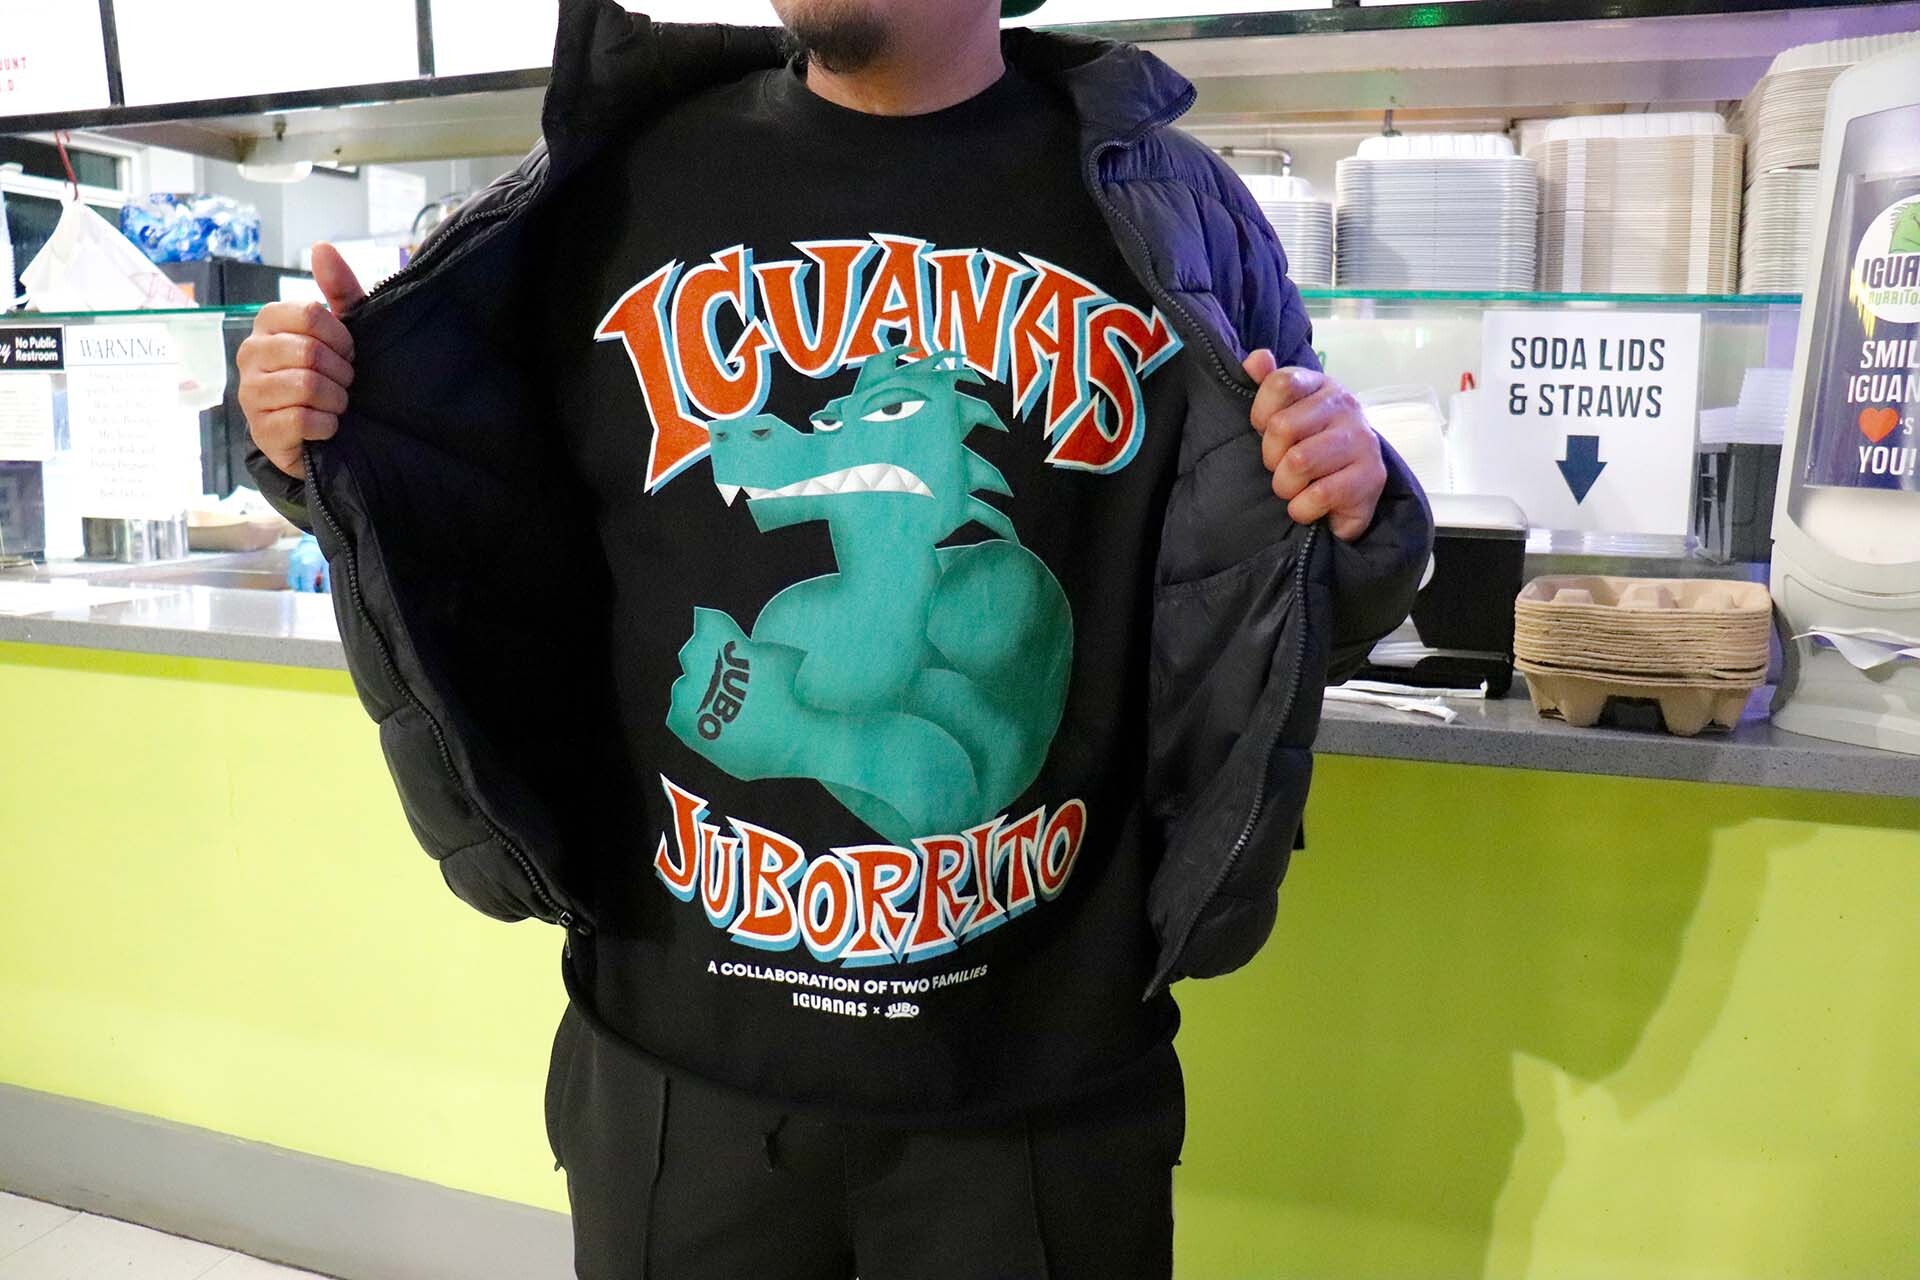 a San Jose artist showcases a shirt he designed for a local taqueria